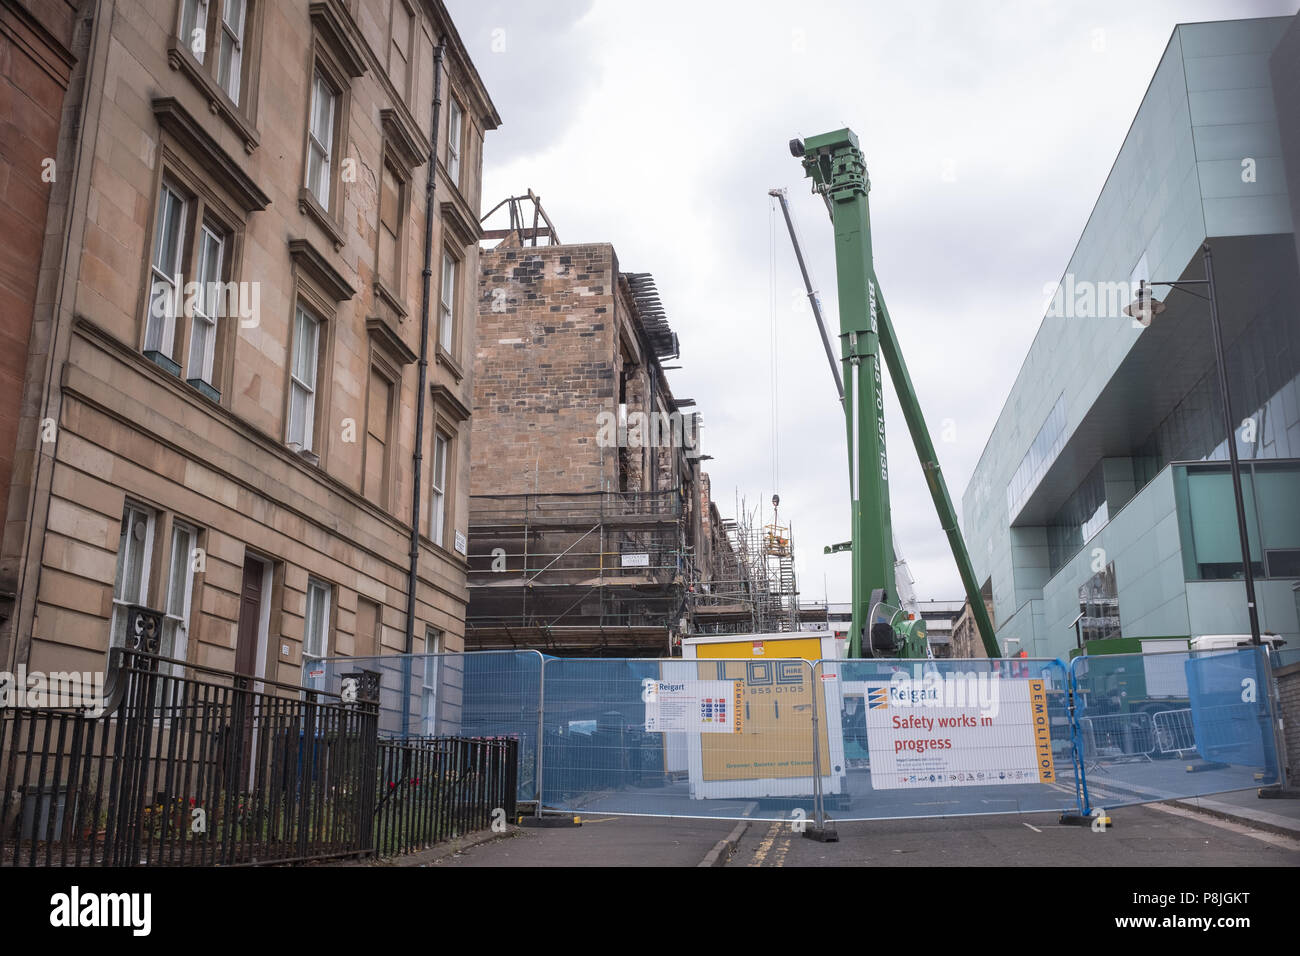 Vue du bâtiment de la Glasgow School of Art endommagé par le feu dans Renfrew Street, Glasgow, alors que les travaux de réparation commencent. Banque D'Images